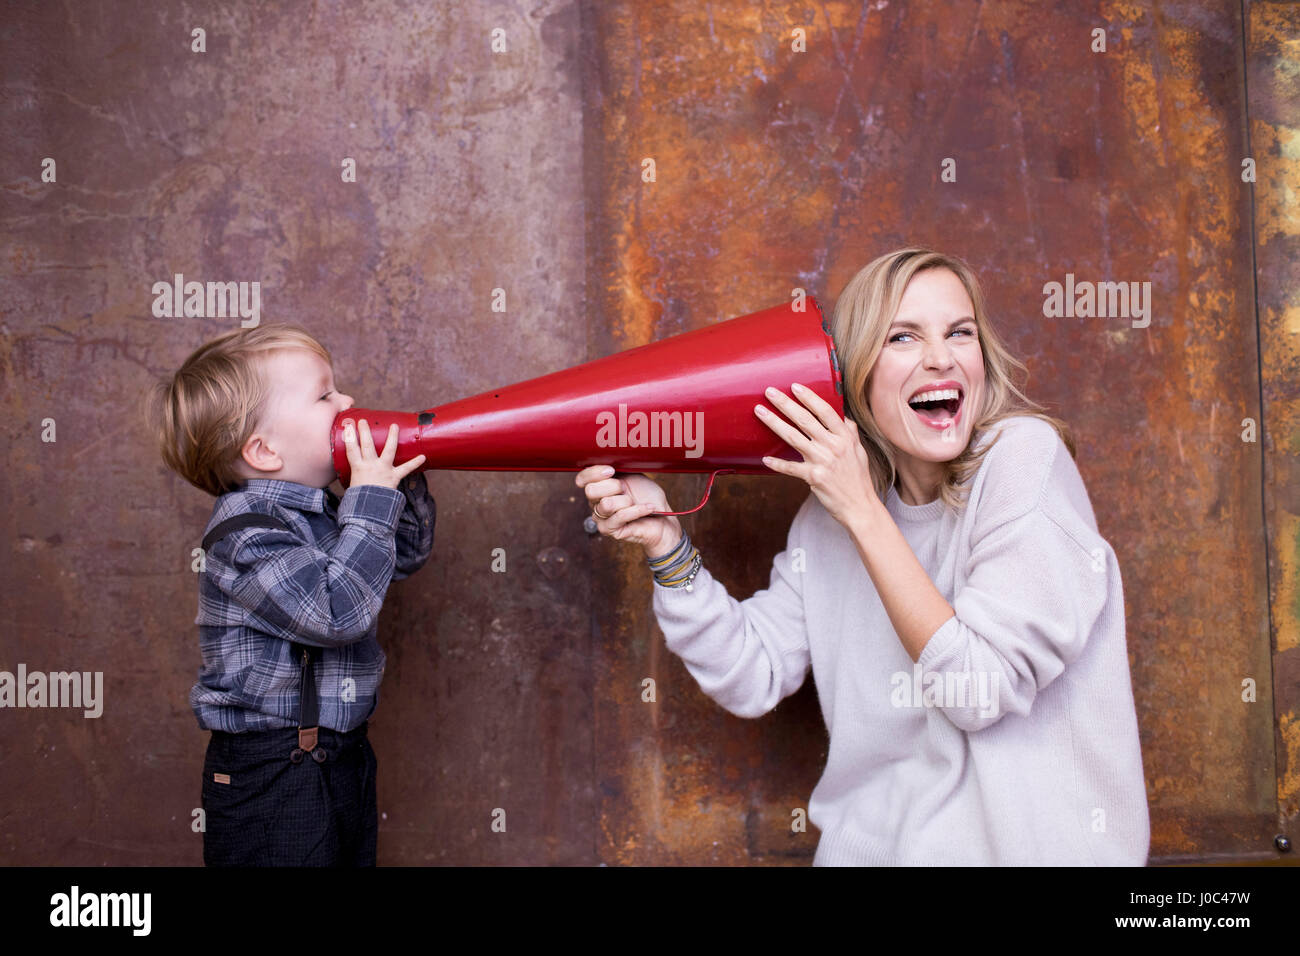 Jeune garçon à parler dans un mégaphone, woman holding megaphone à son oreille Banque D'Images